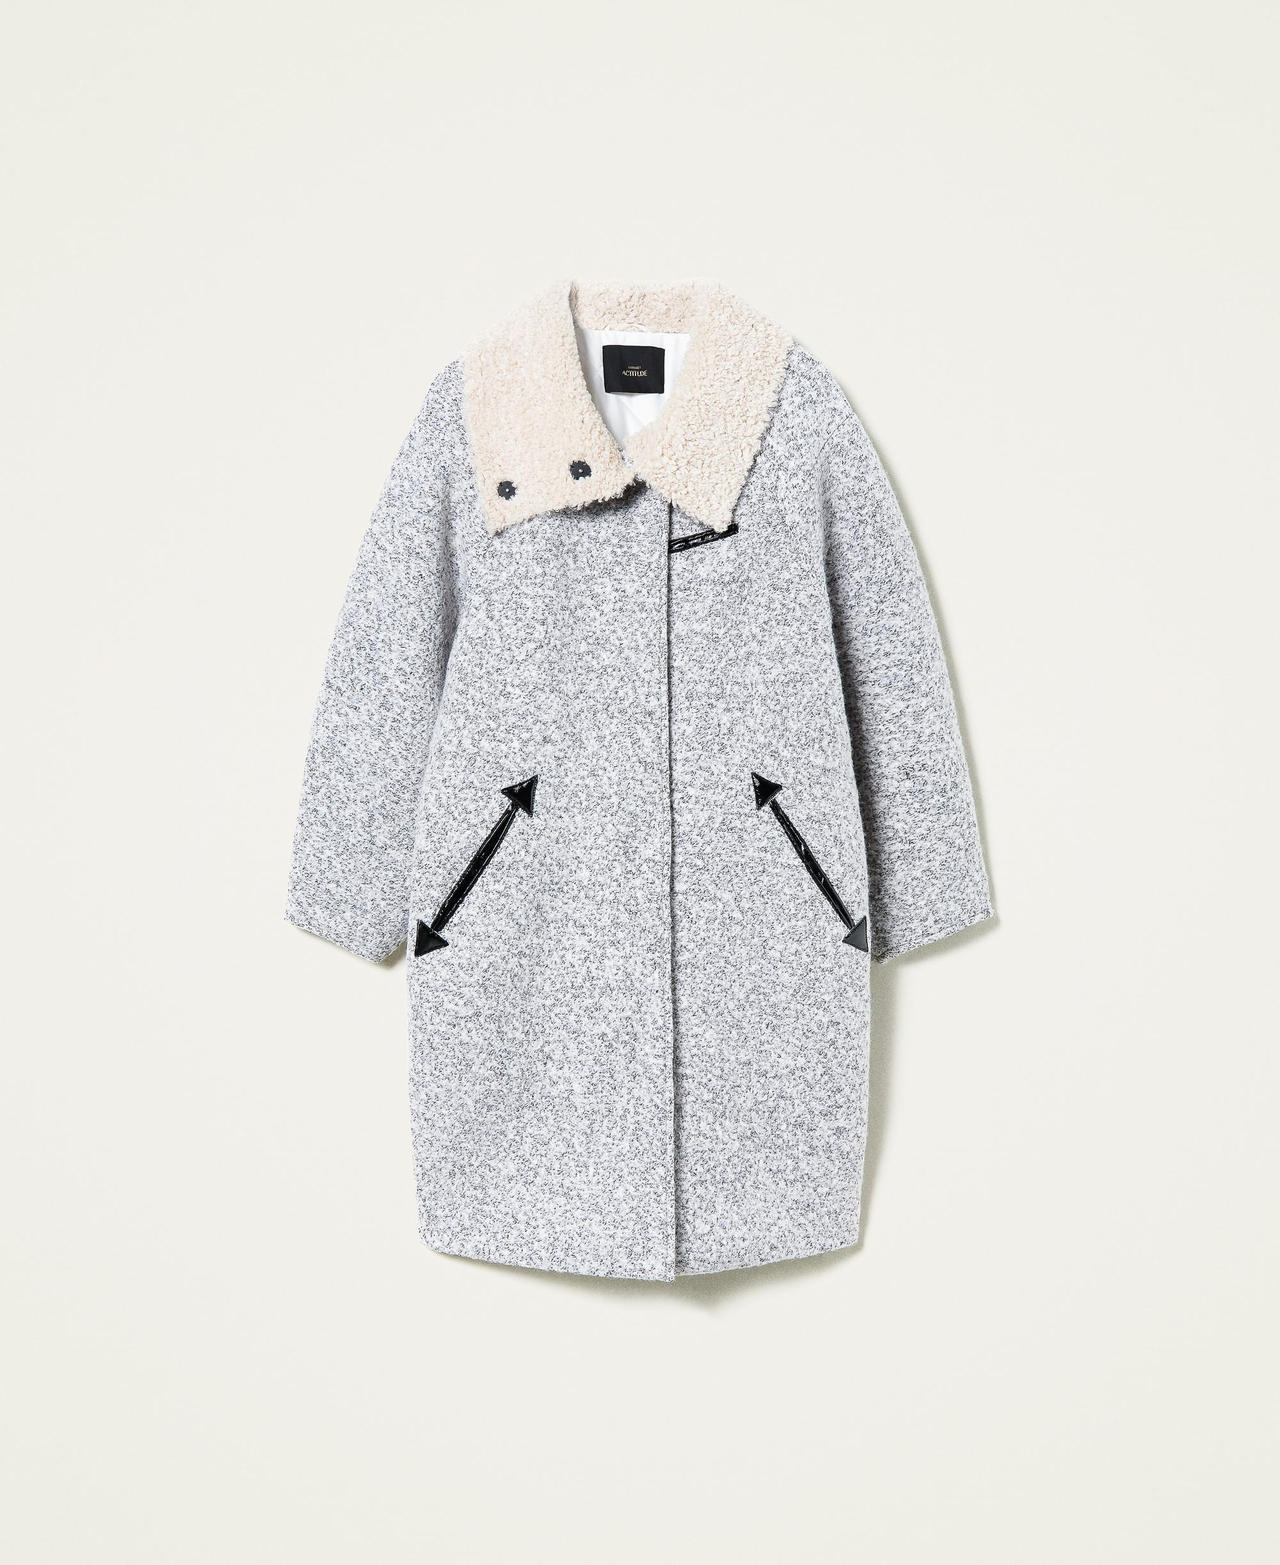 Manteau en tissu bouclé Bicolore Blanc Nacre / Noir Femme 212AT2280-0S